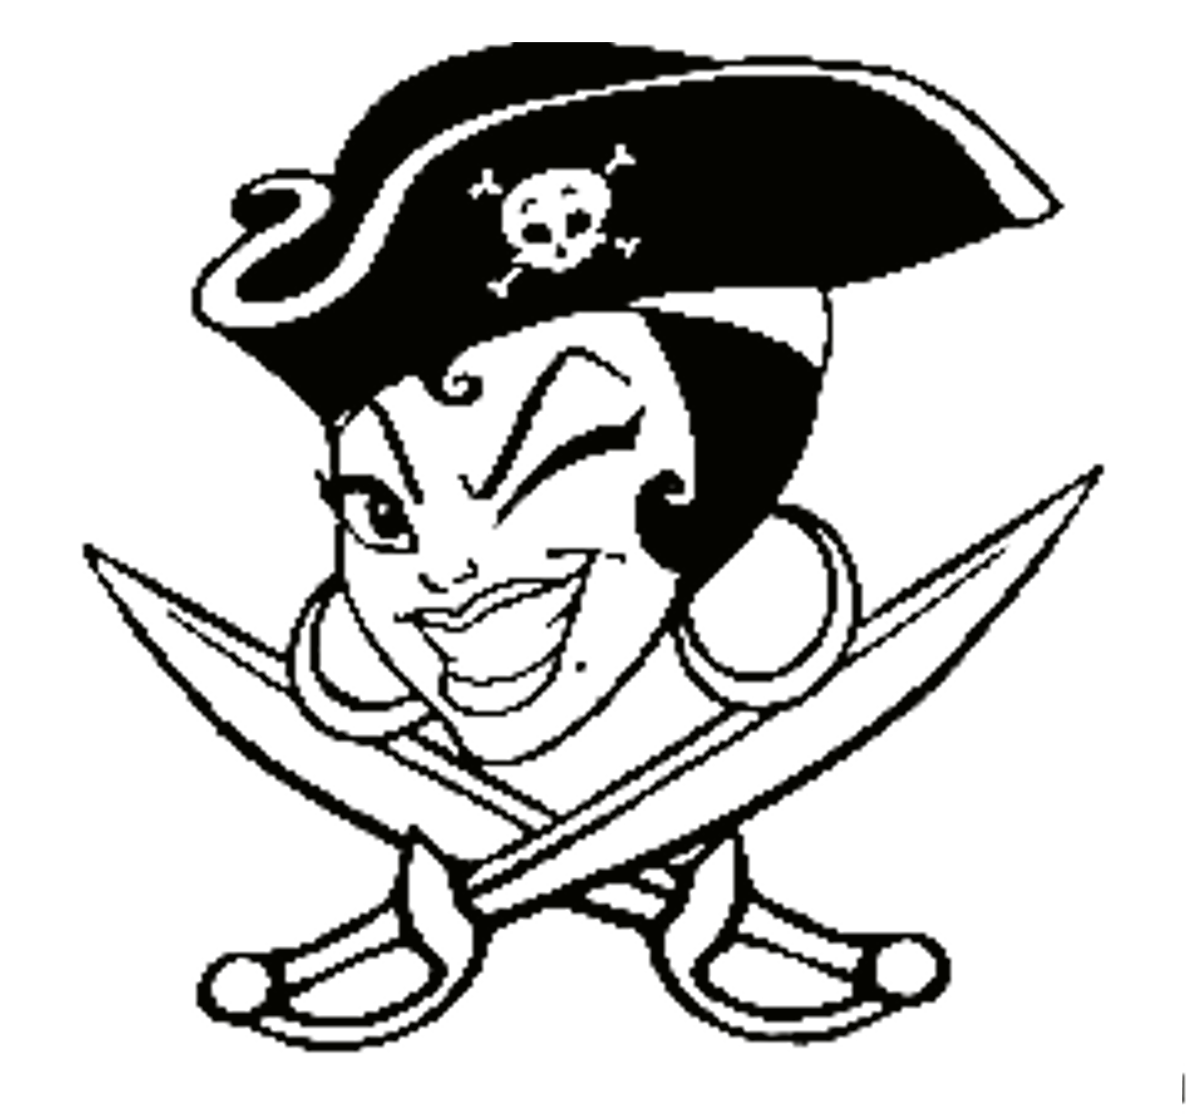 Пиратская ж. Пиратский знак. Эмблема пиратов. Пират рисунок. Пиратские узоры.